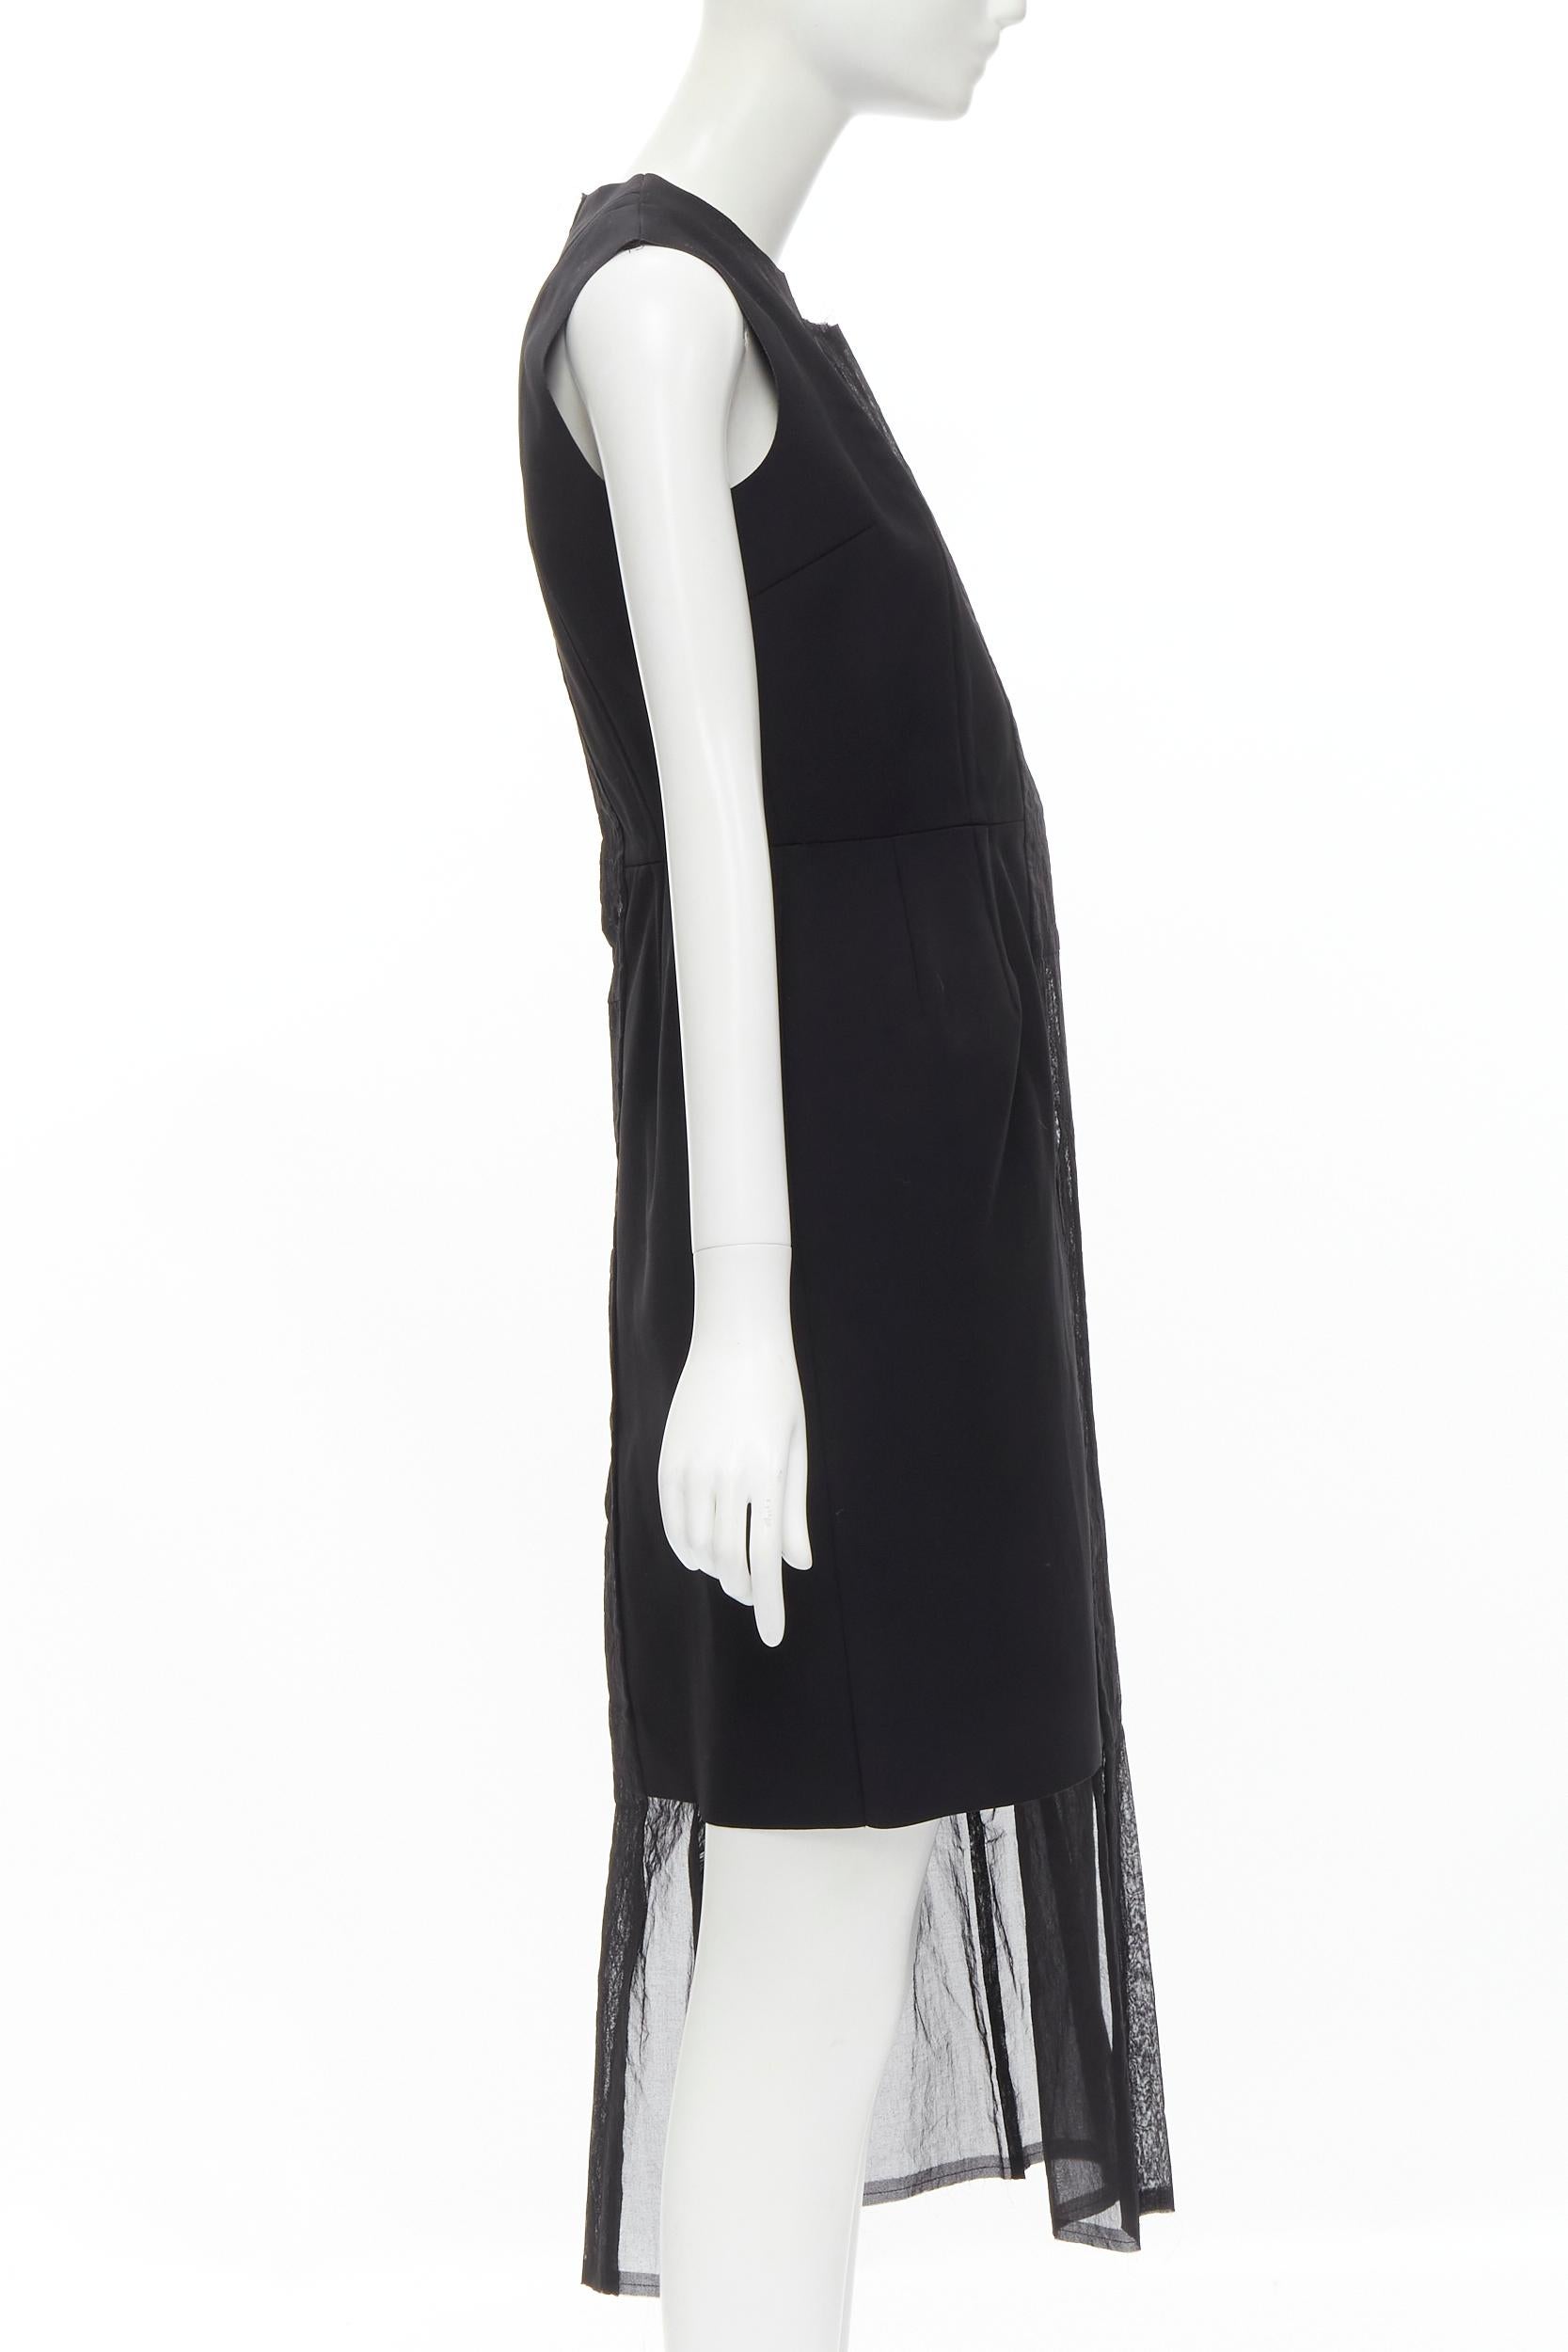 Black COMME DES GARCONS Vintage 1988 black bi-fabric sheer deconstructed dress S For Sale